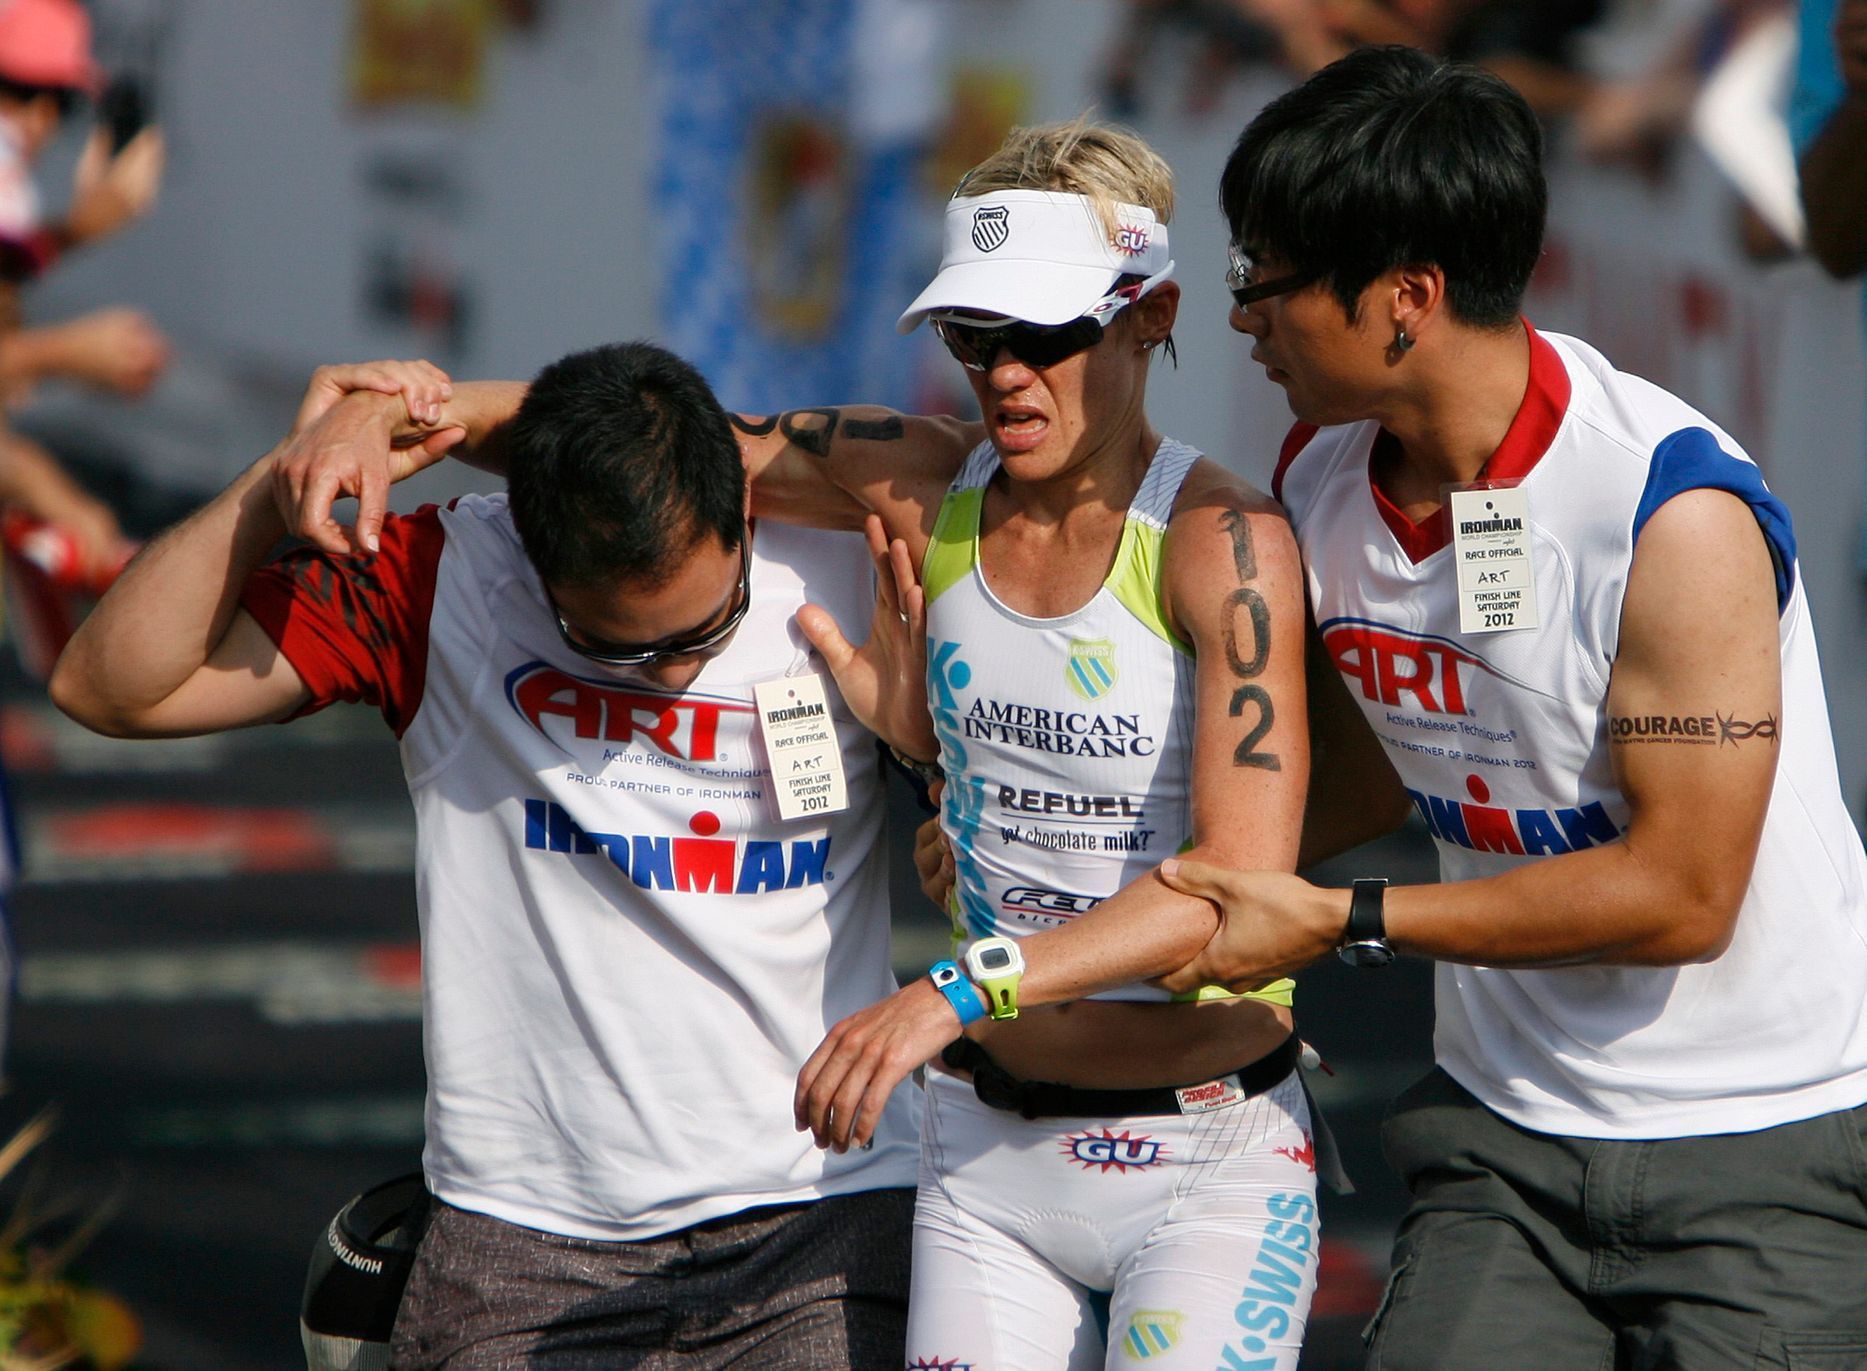 Nejtěžší triatlonový závod světa Ironman 2012